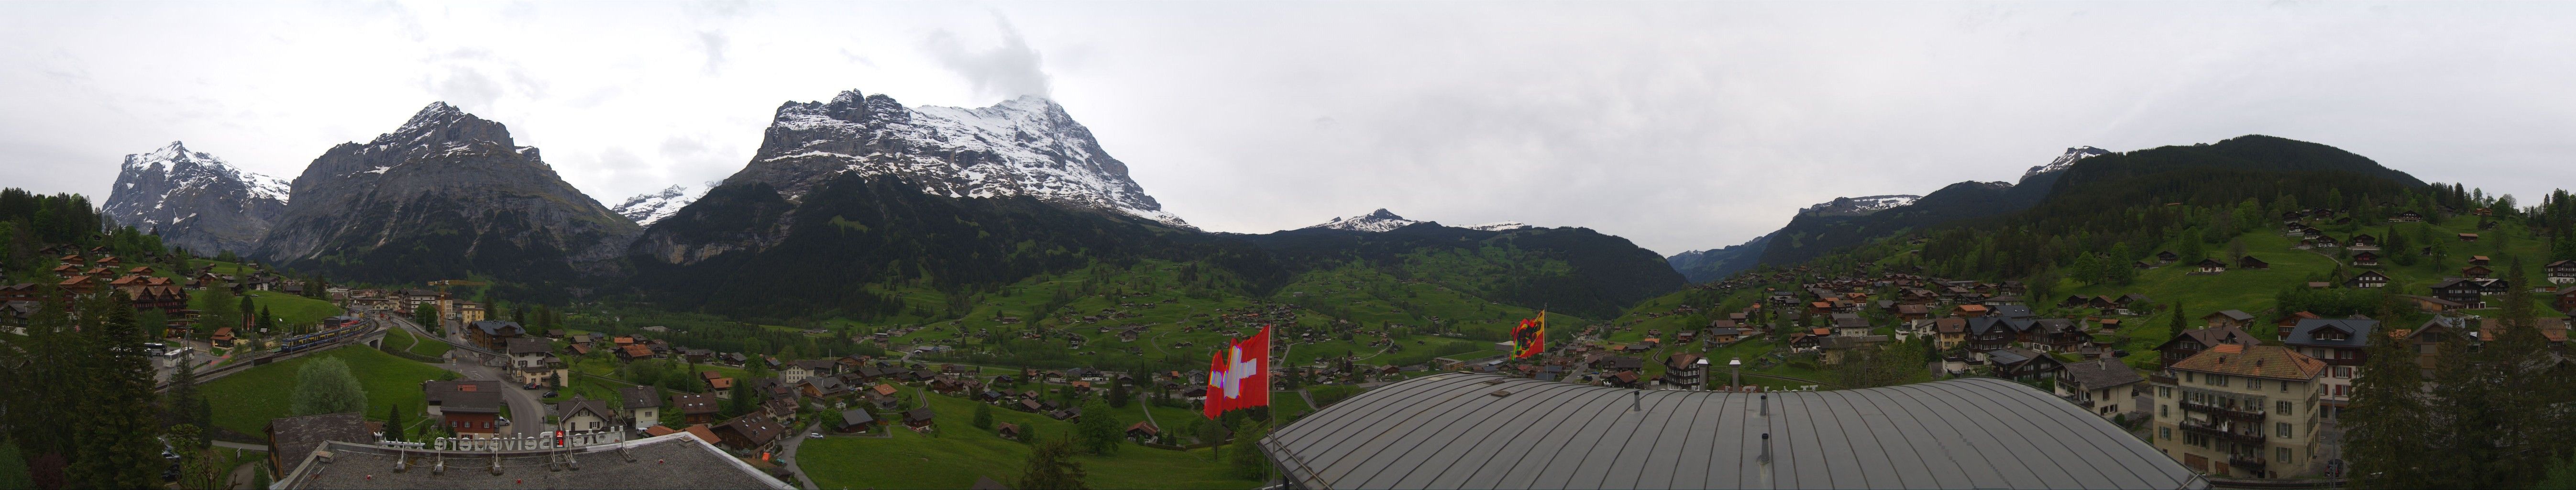 Grindelwald: Belvedere Swiss Quality Hotel Grindelwald - Eiger - Wetterhorn - Kleine Scheidegg - Männlichen